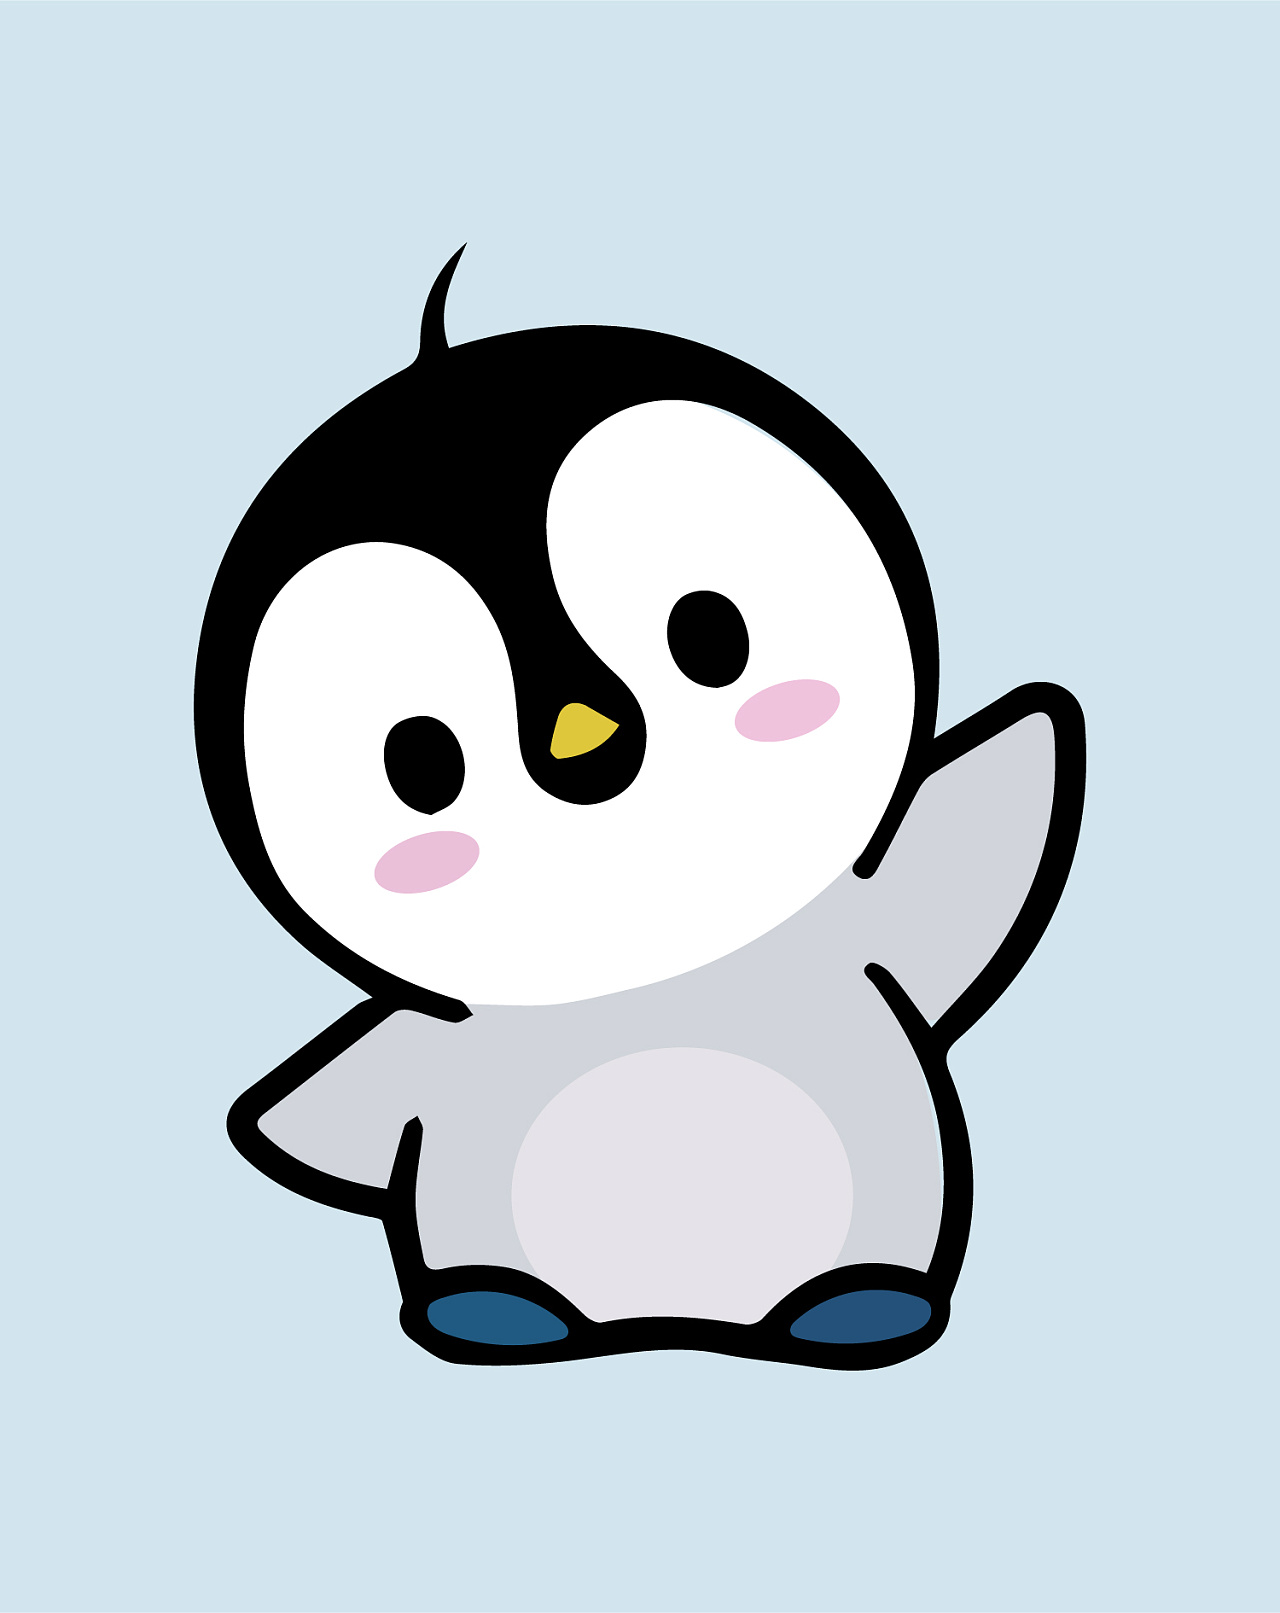 画了一个小企鹅